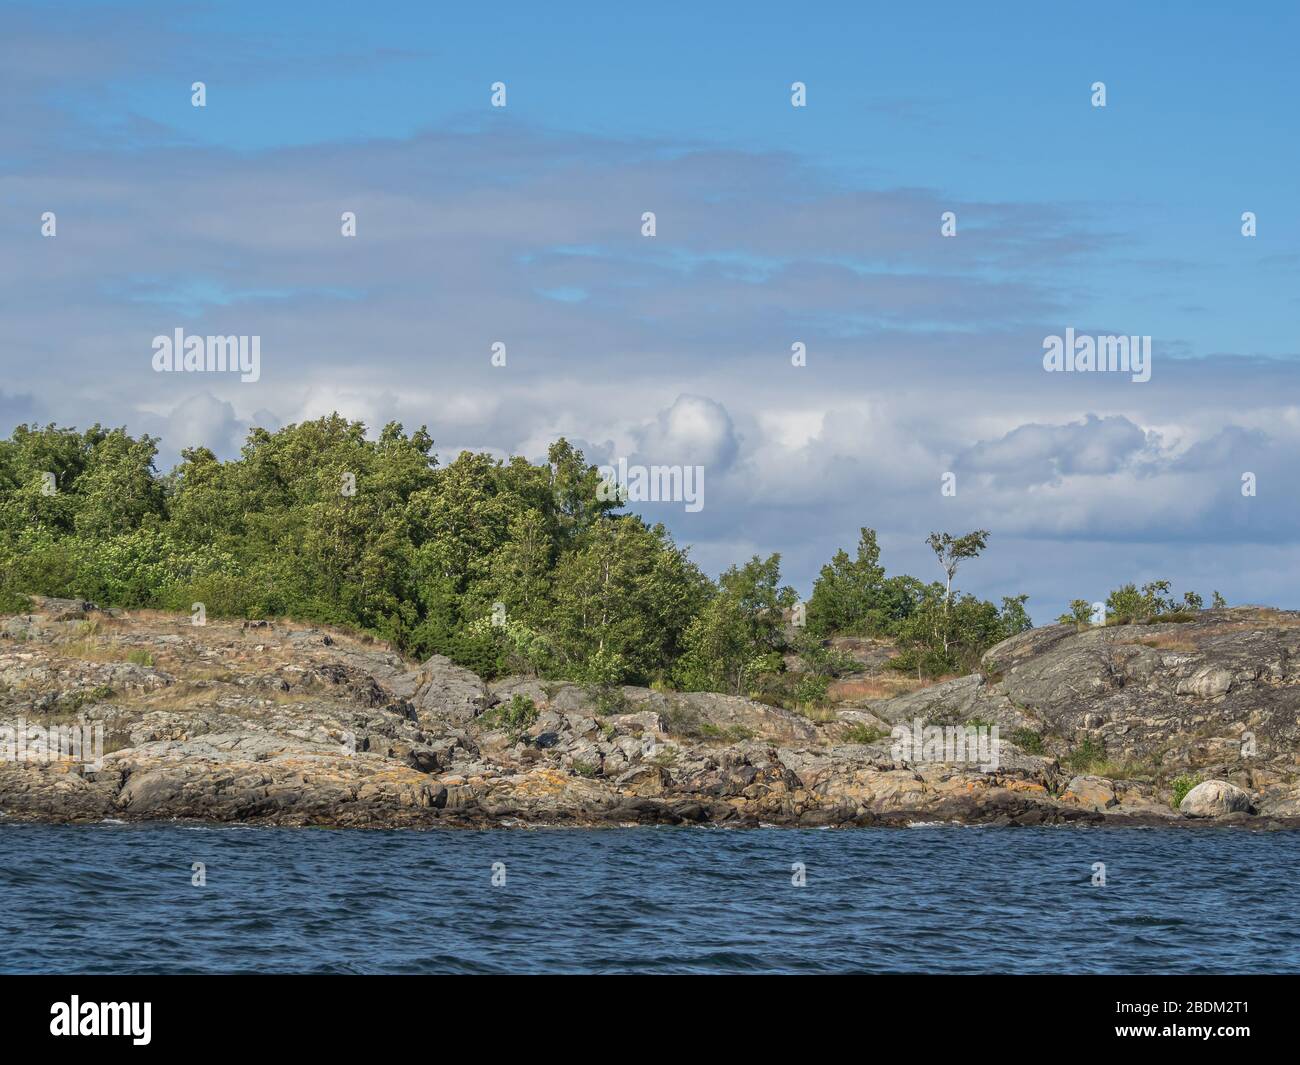 Le bouleau et d'autres arbres poussent sous un ciel nuageux sur un îlot rocheux dans la mer Baltique Banque D'Images